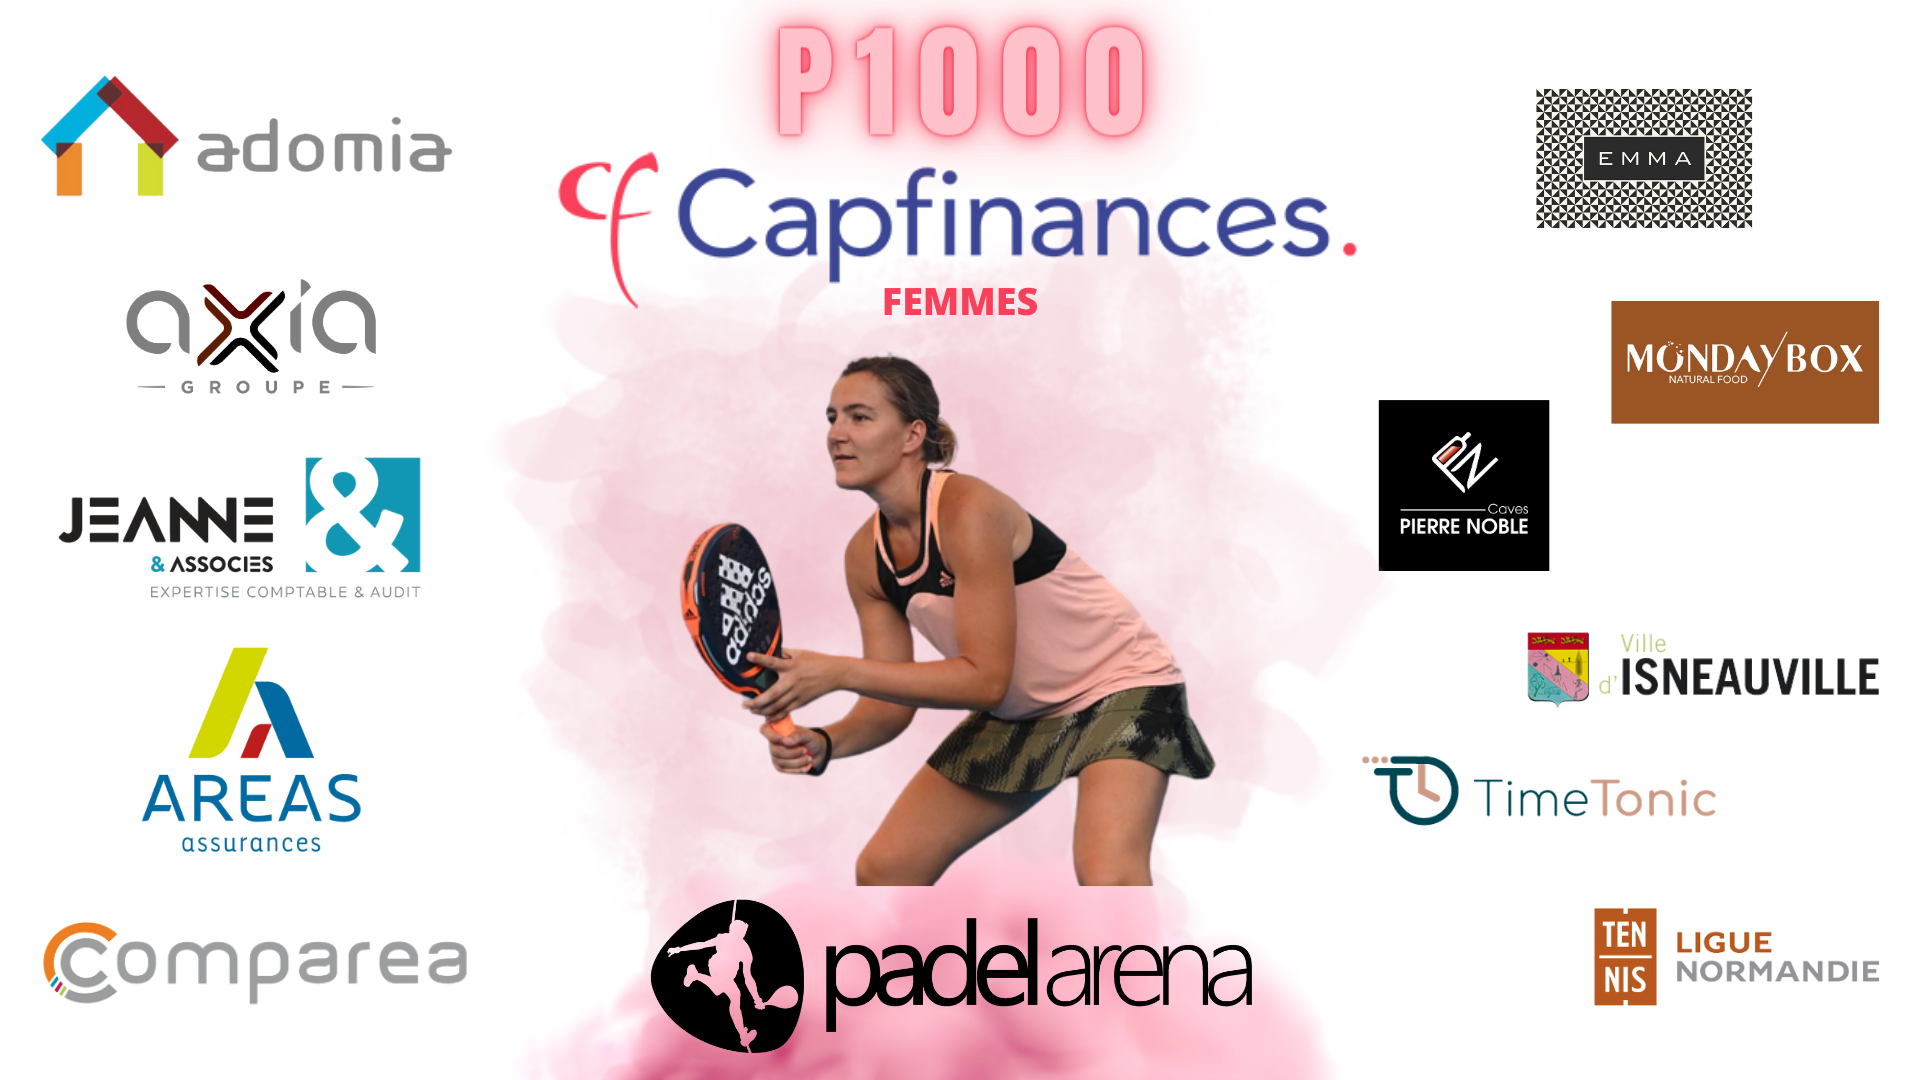 P1000 Open Cap Finance – Padel Arena – Tavoli e programmazione